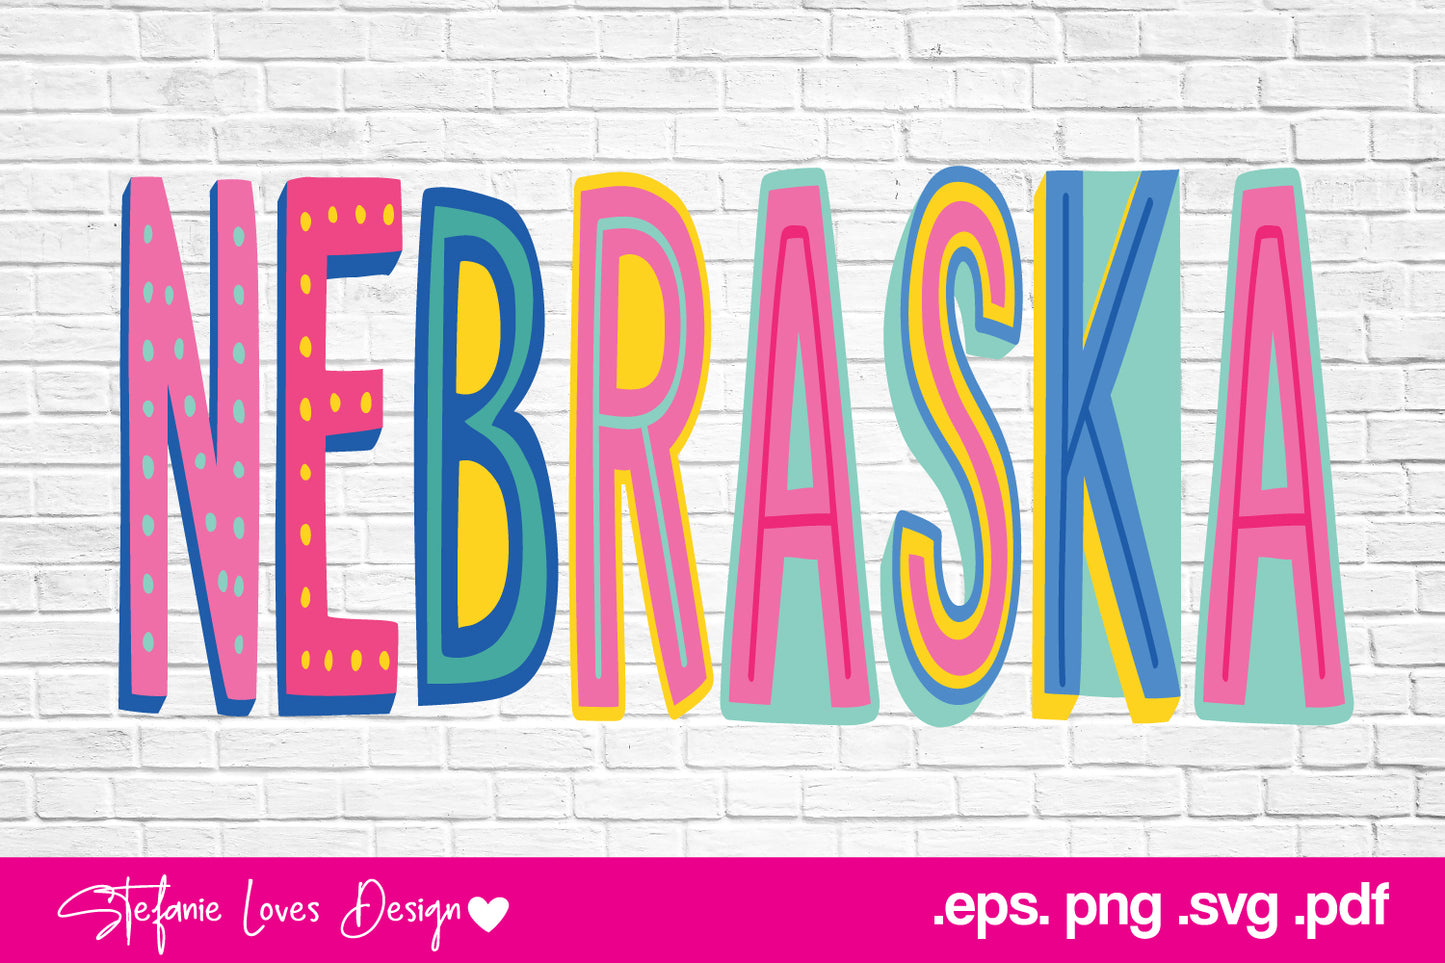 Nebraska Cute Font svg eps pdf png, Digital Design